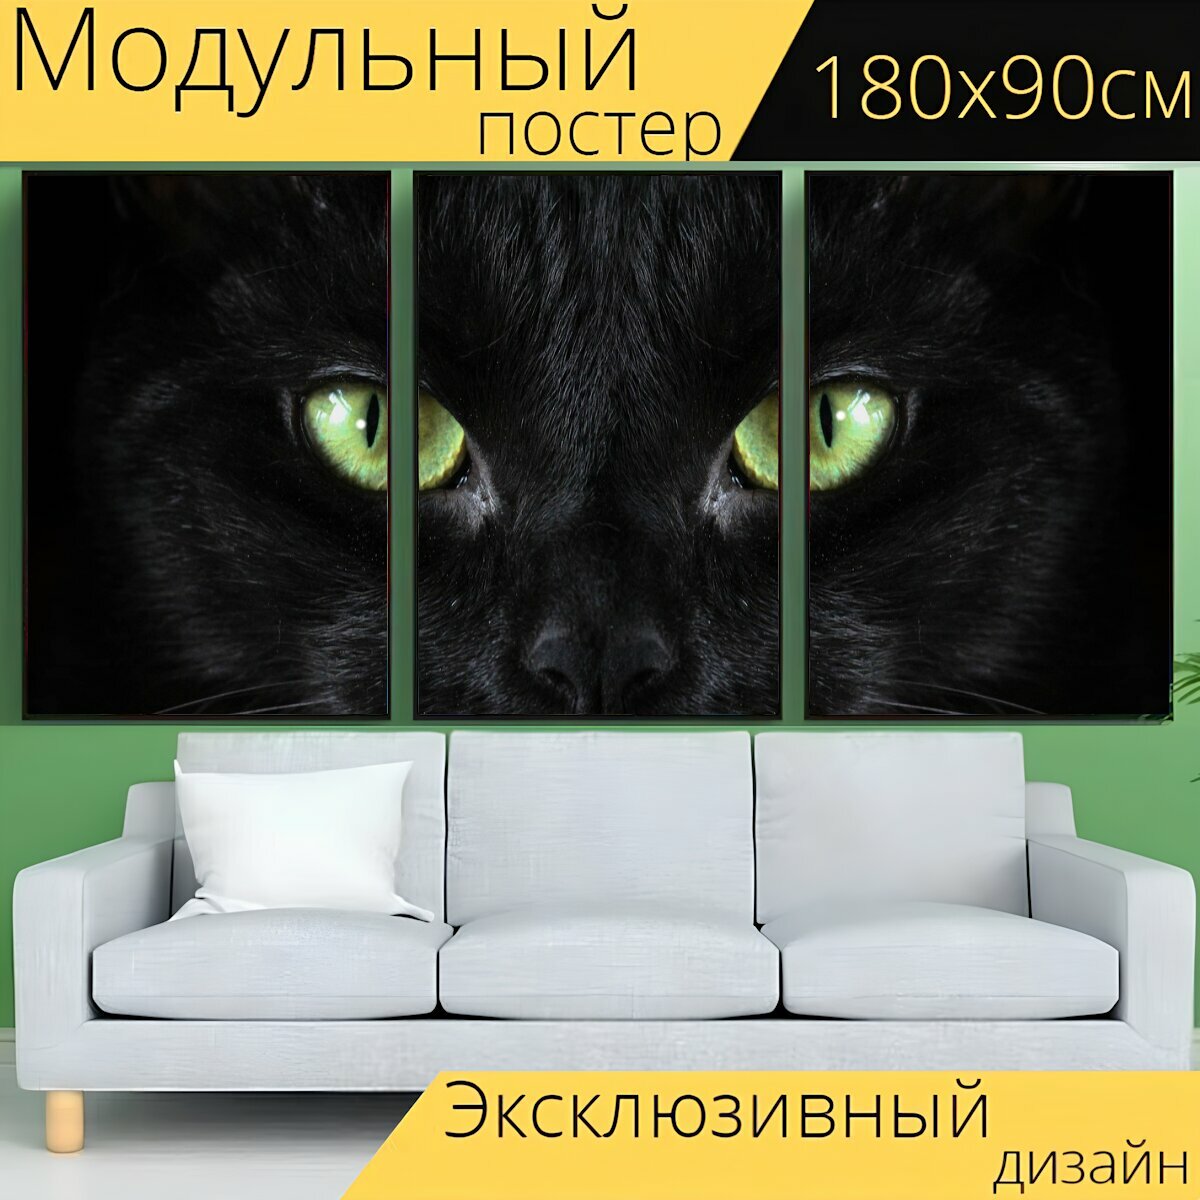 Модульный постер "Кот, чернить, глаза" 180 x 90 см. для интерьера